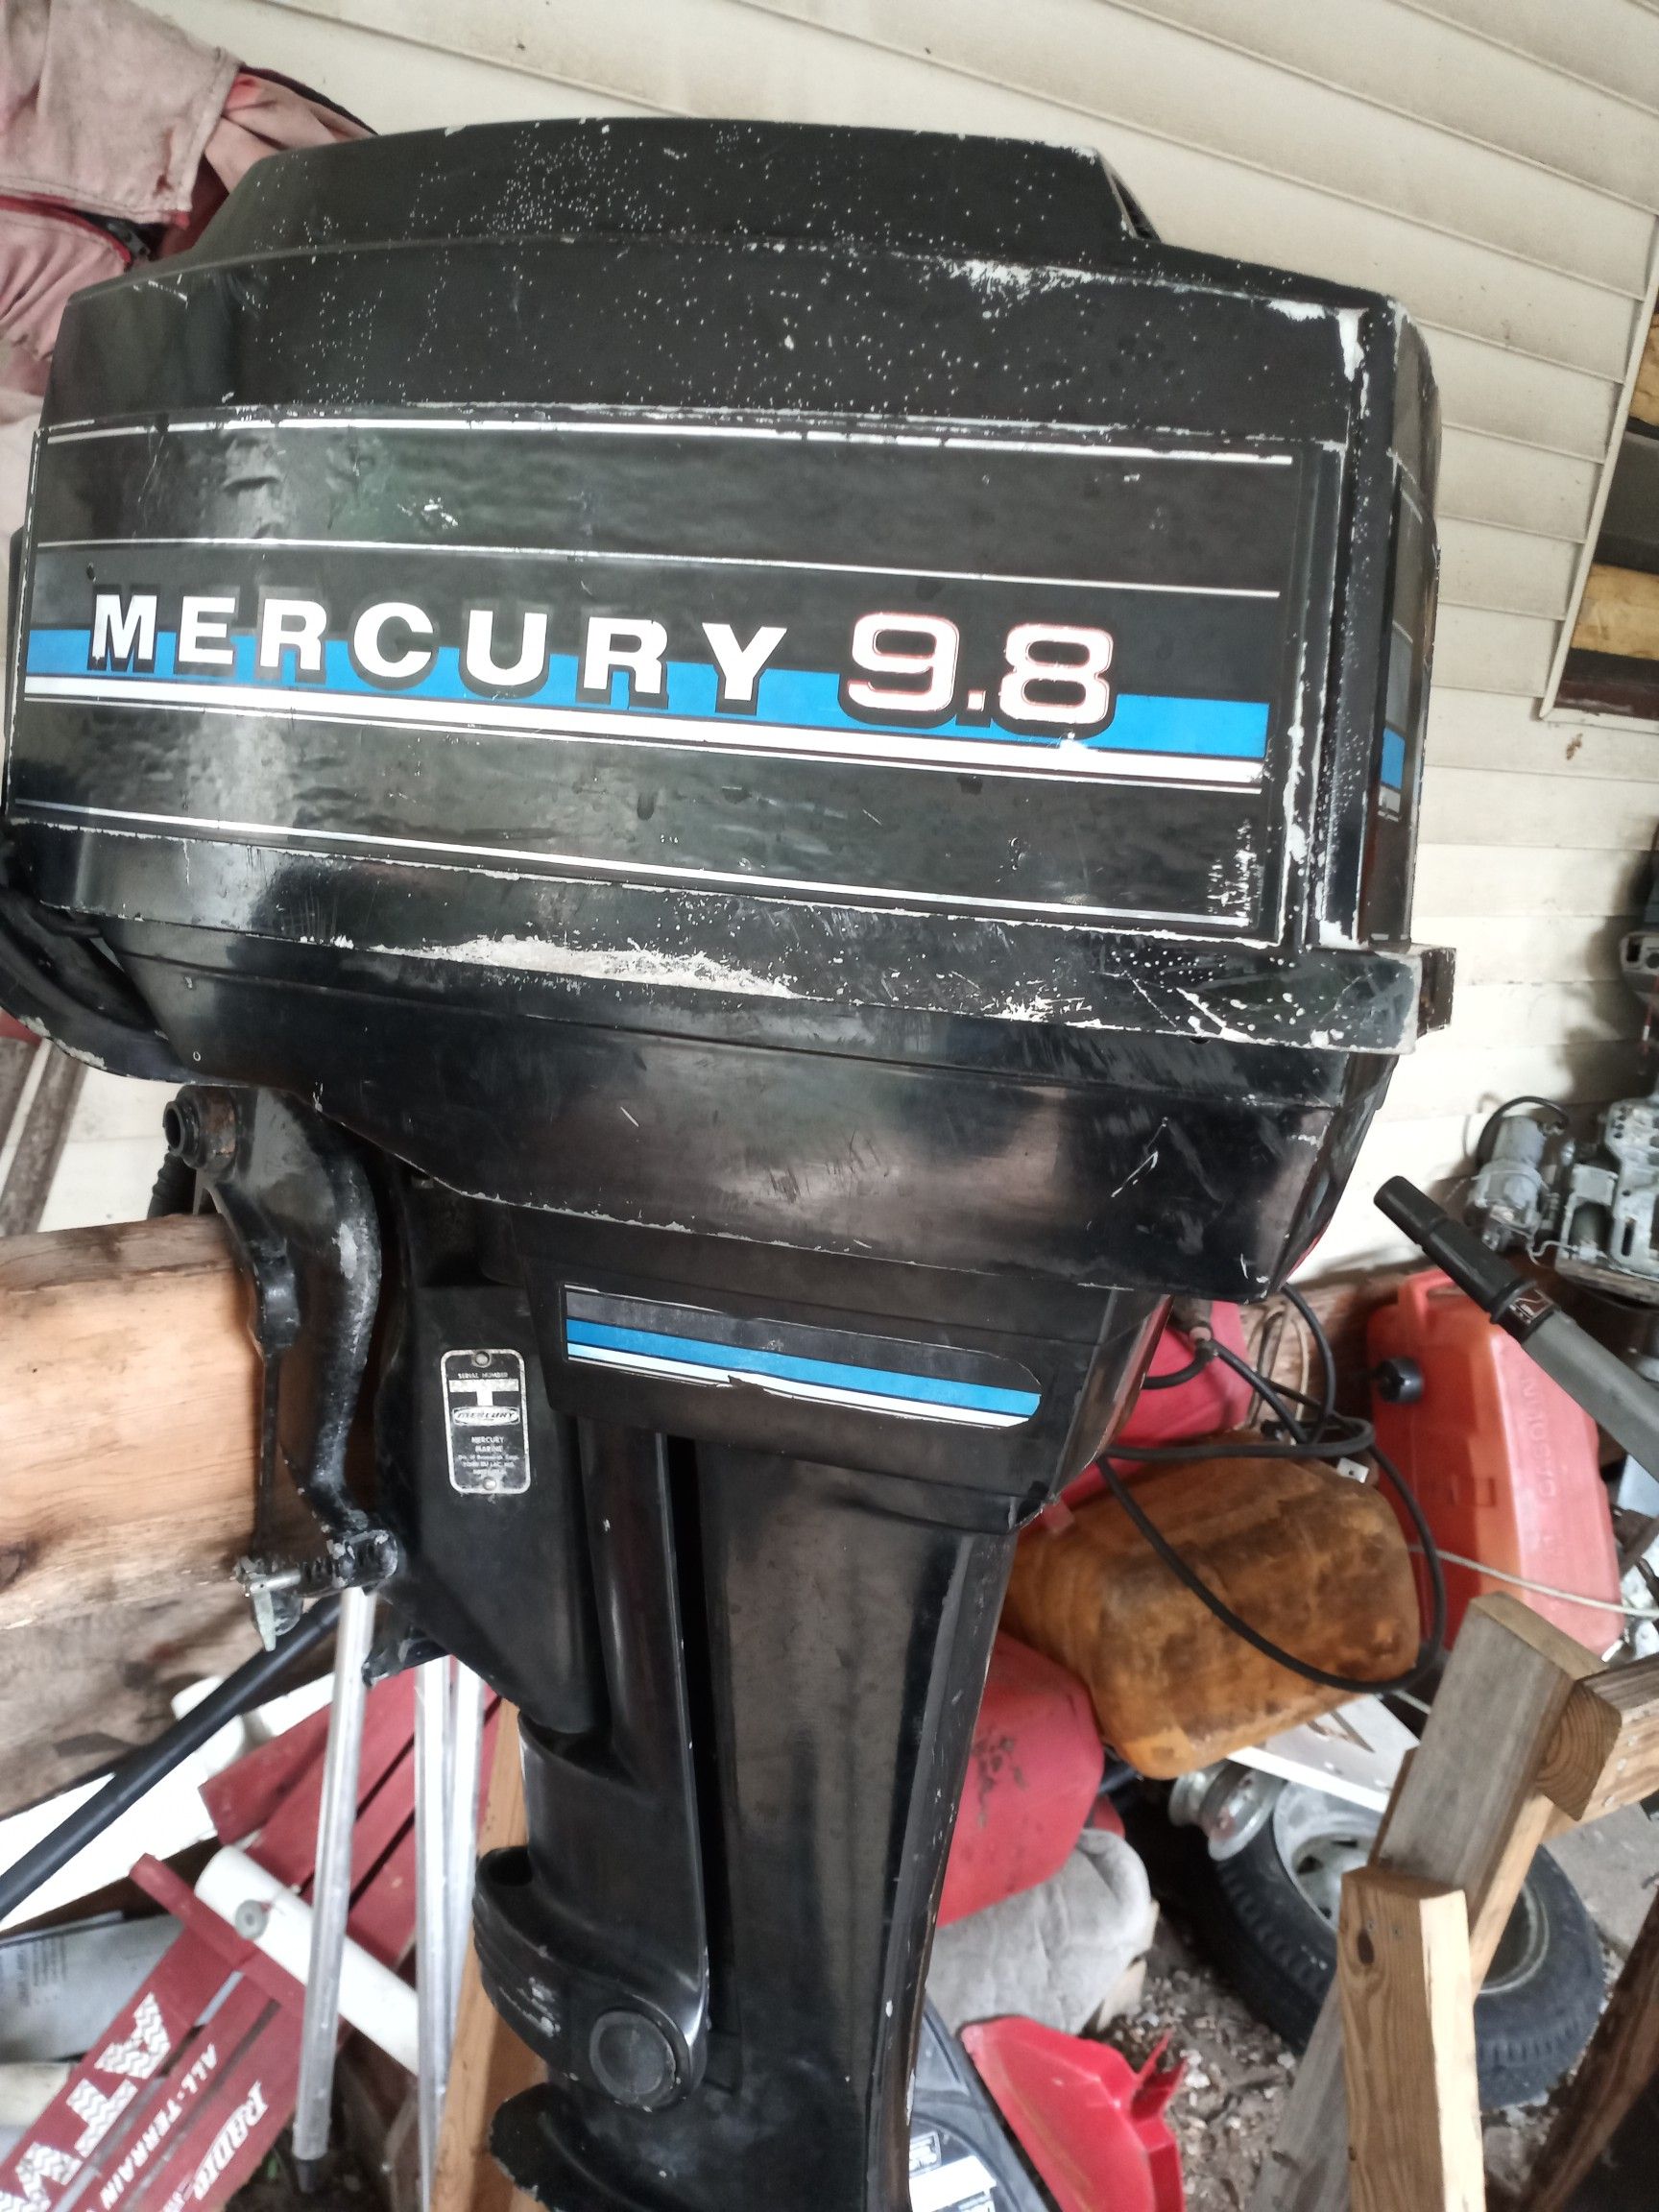 Mercury 9.8